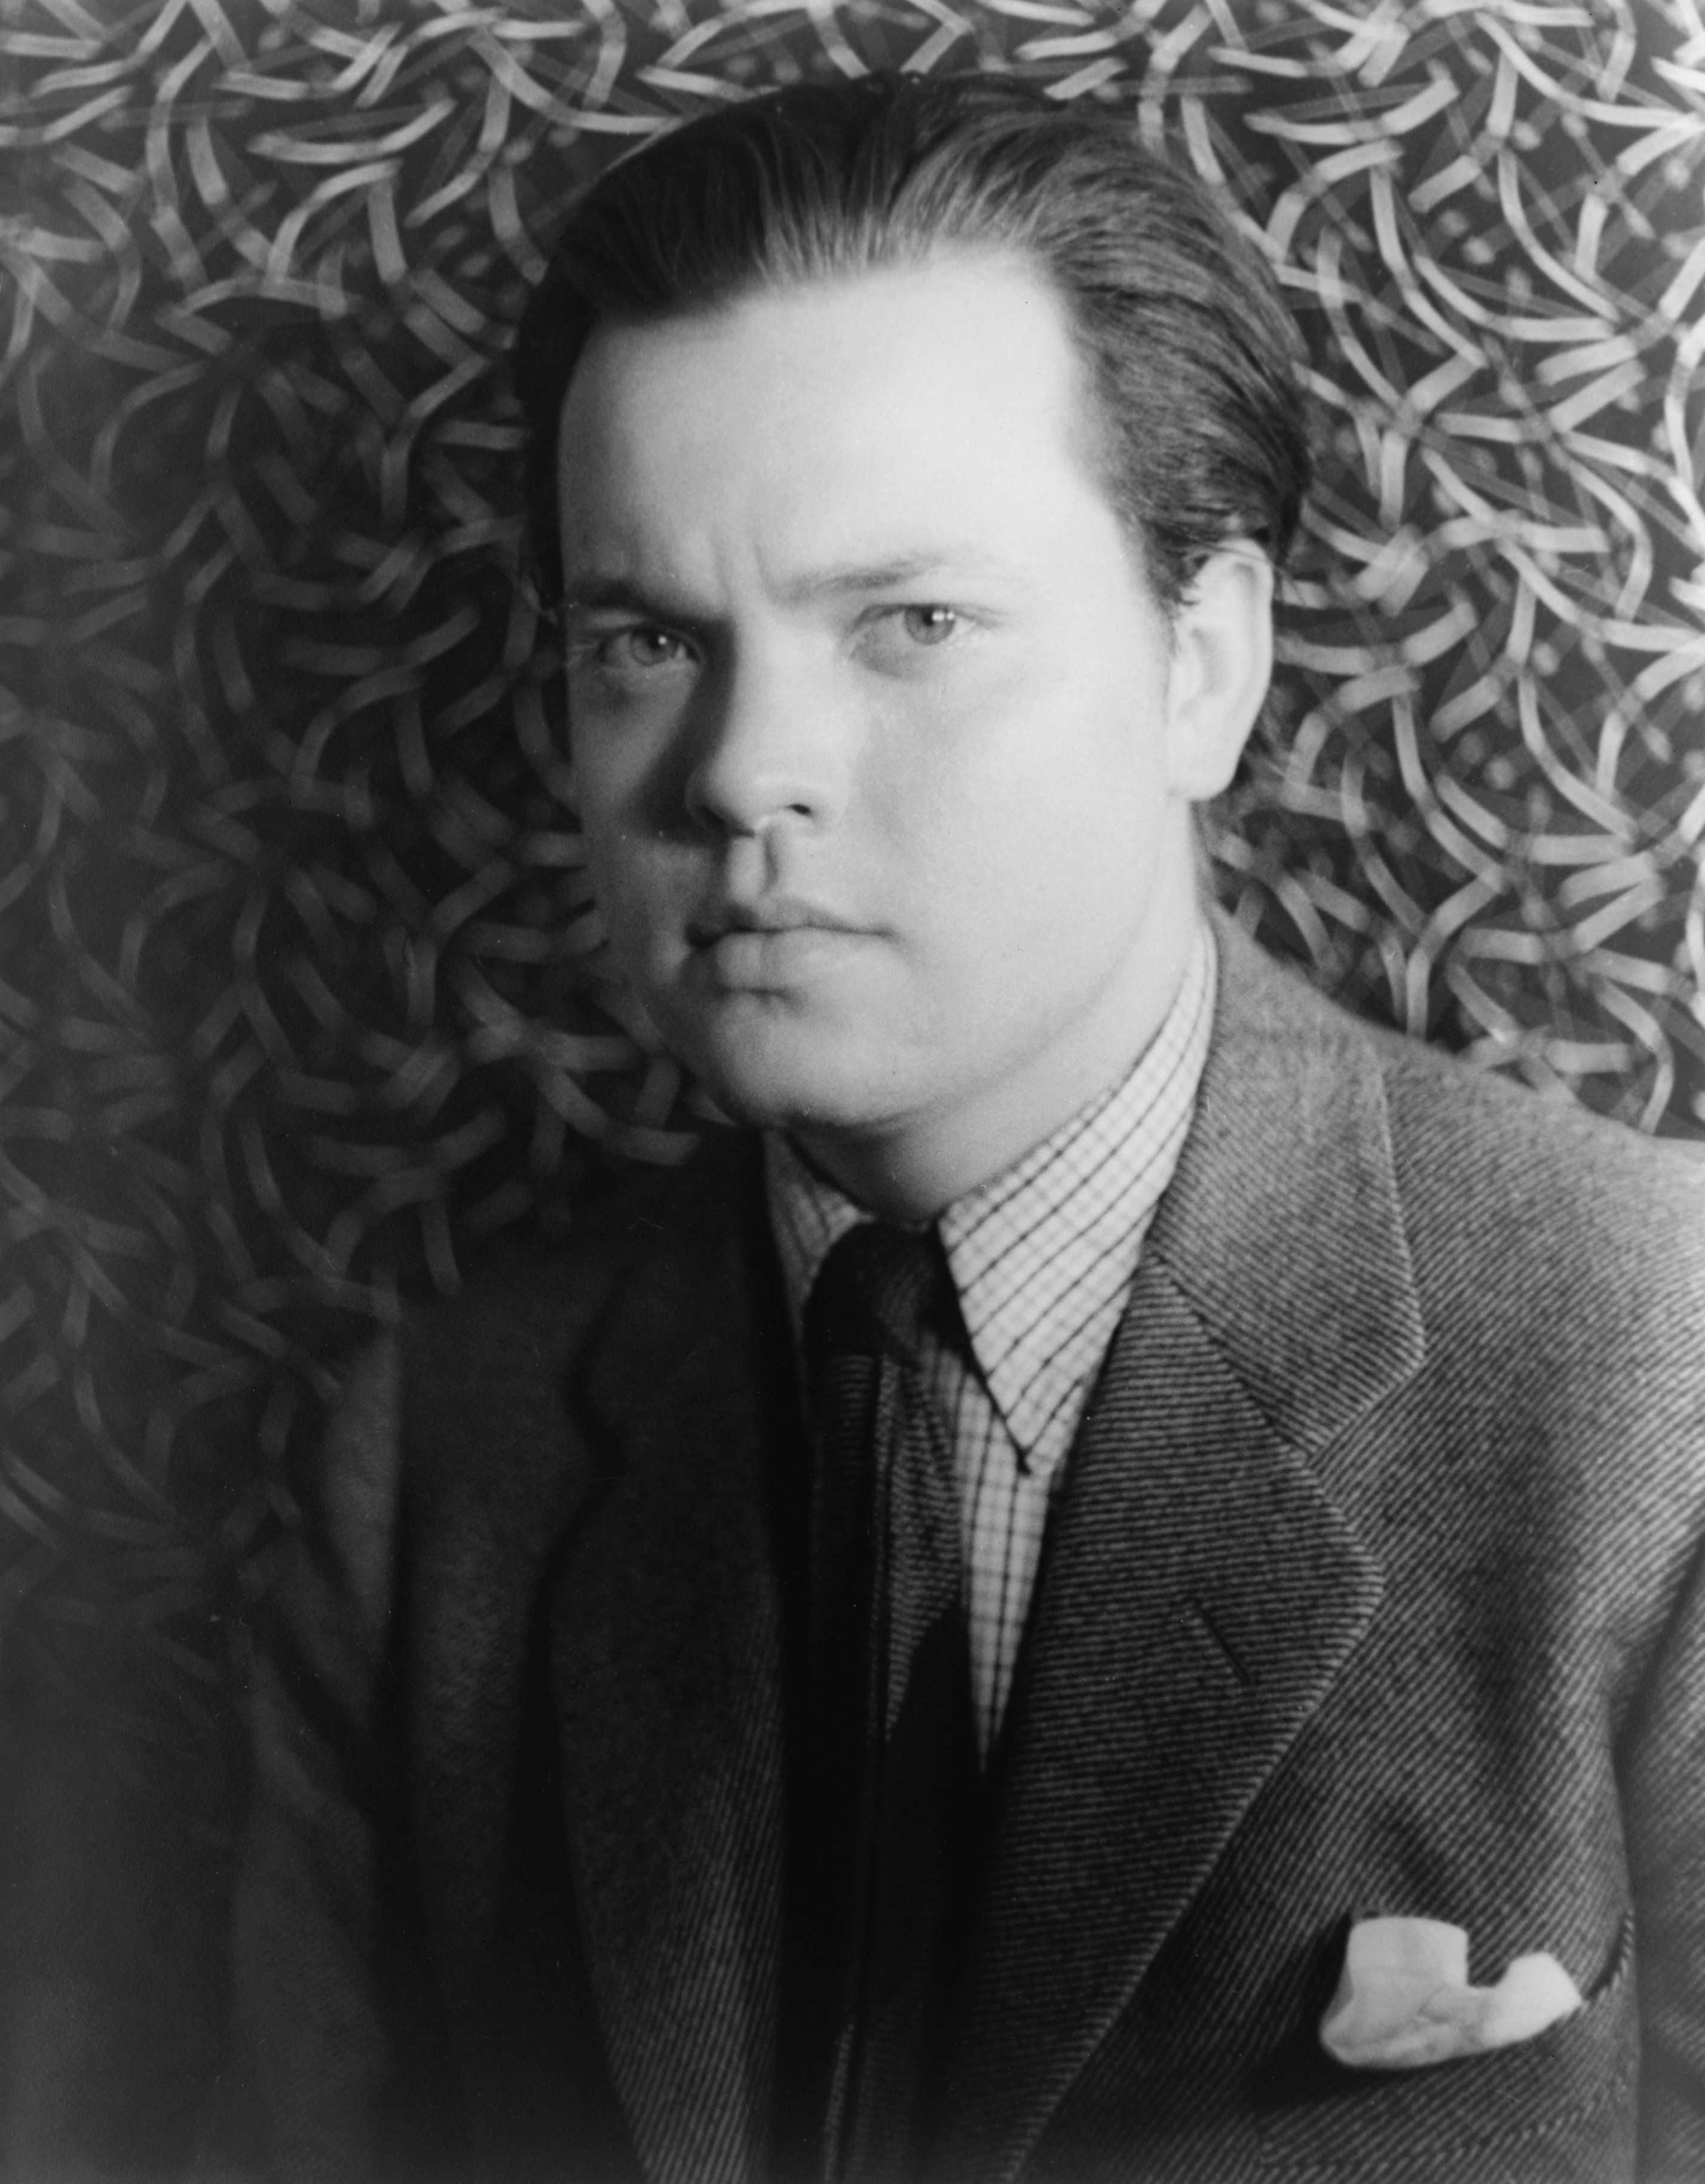 Orson Welles 1004